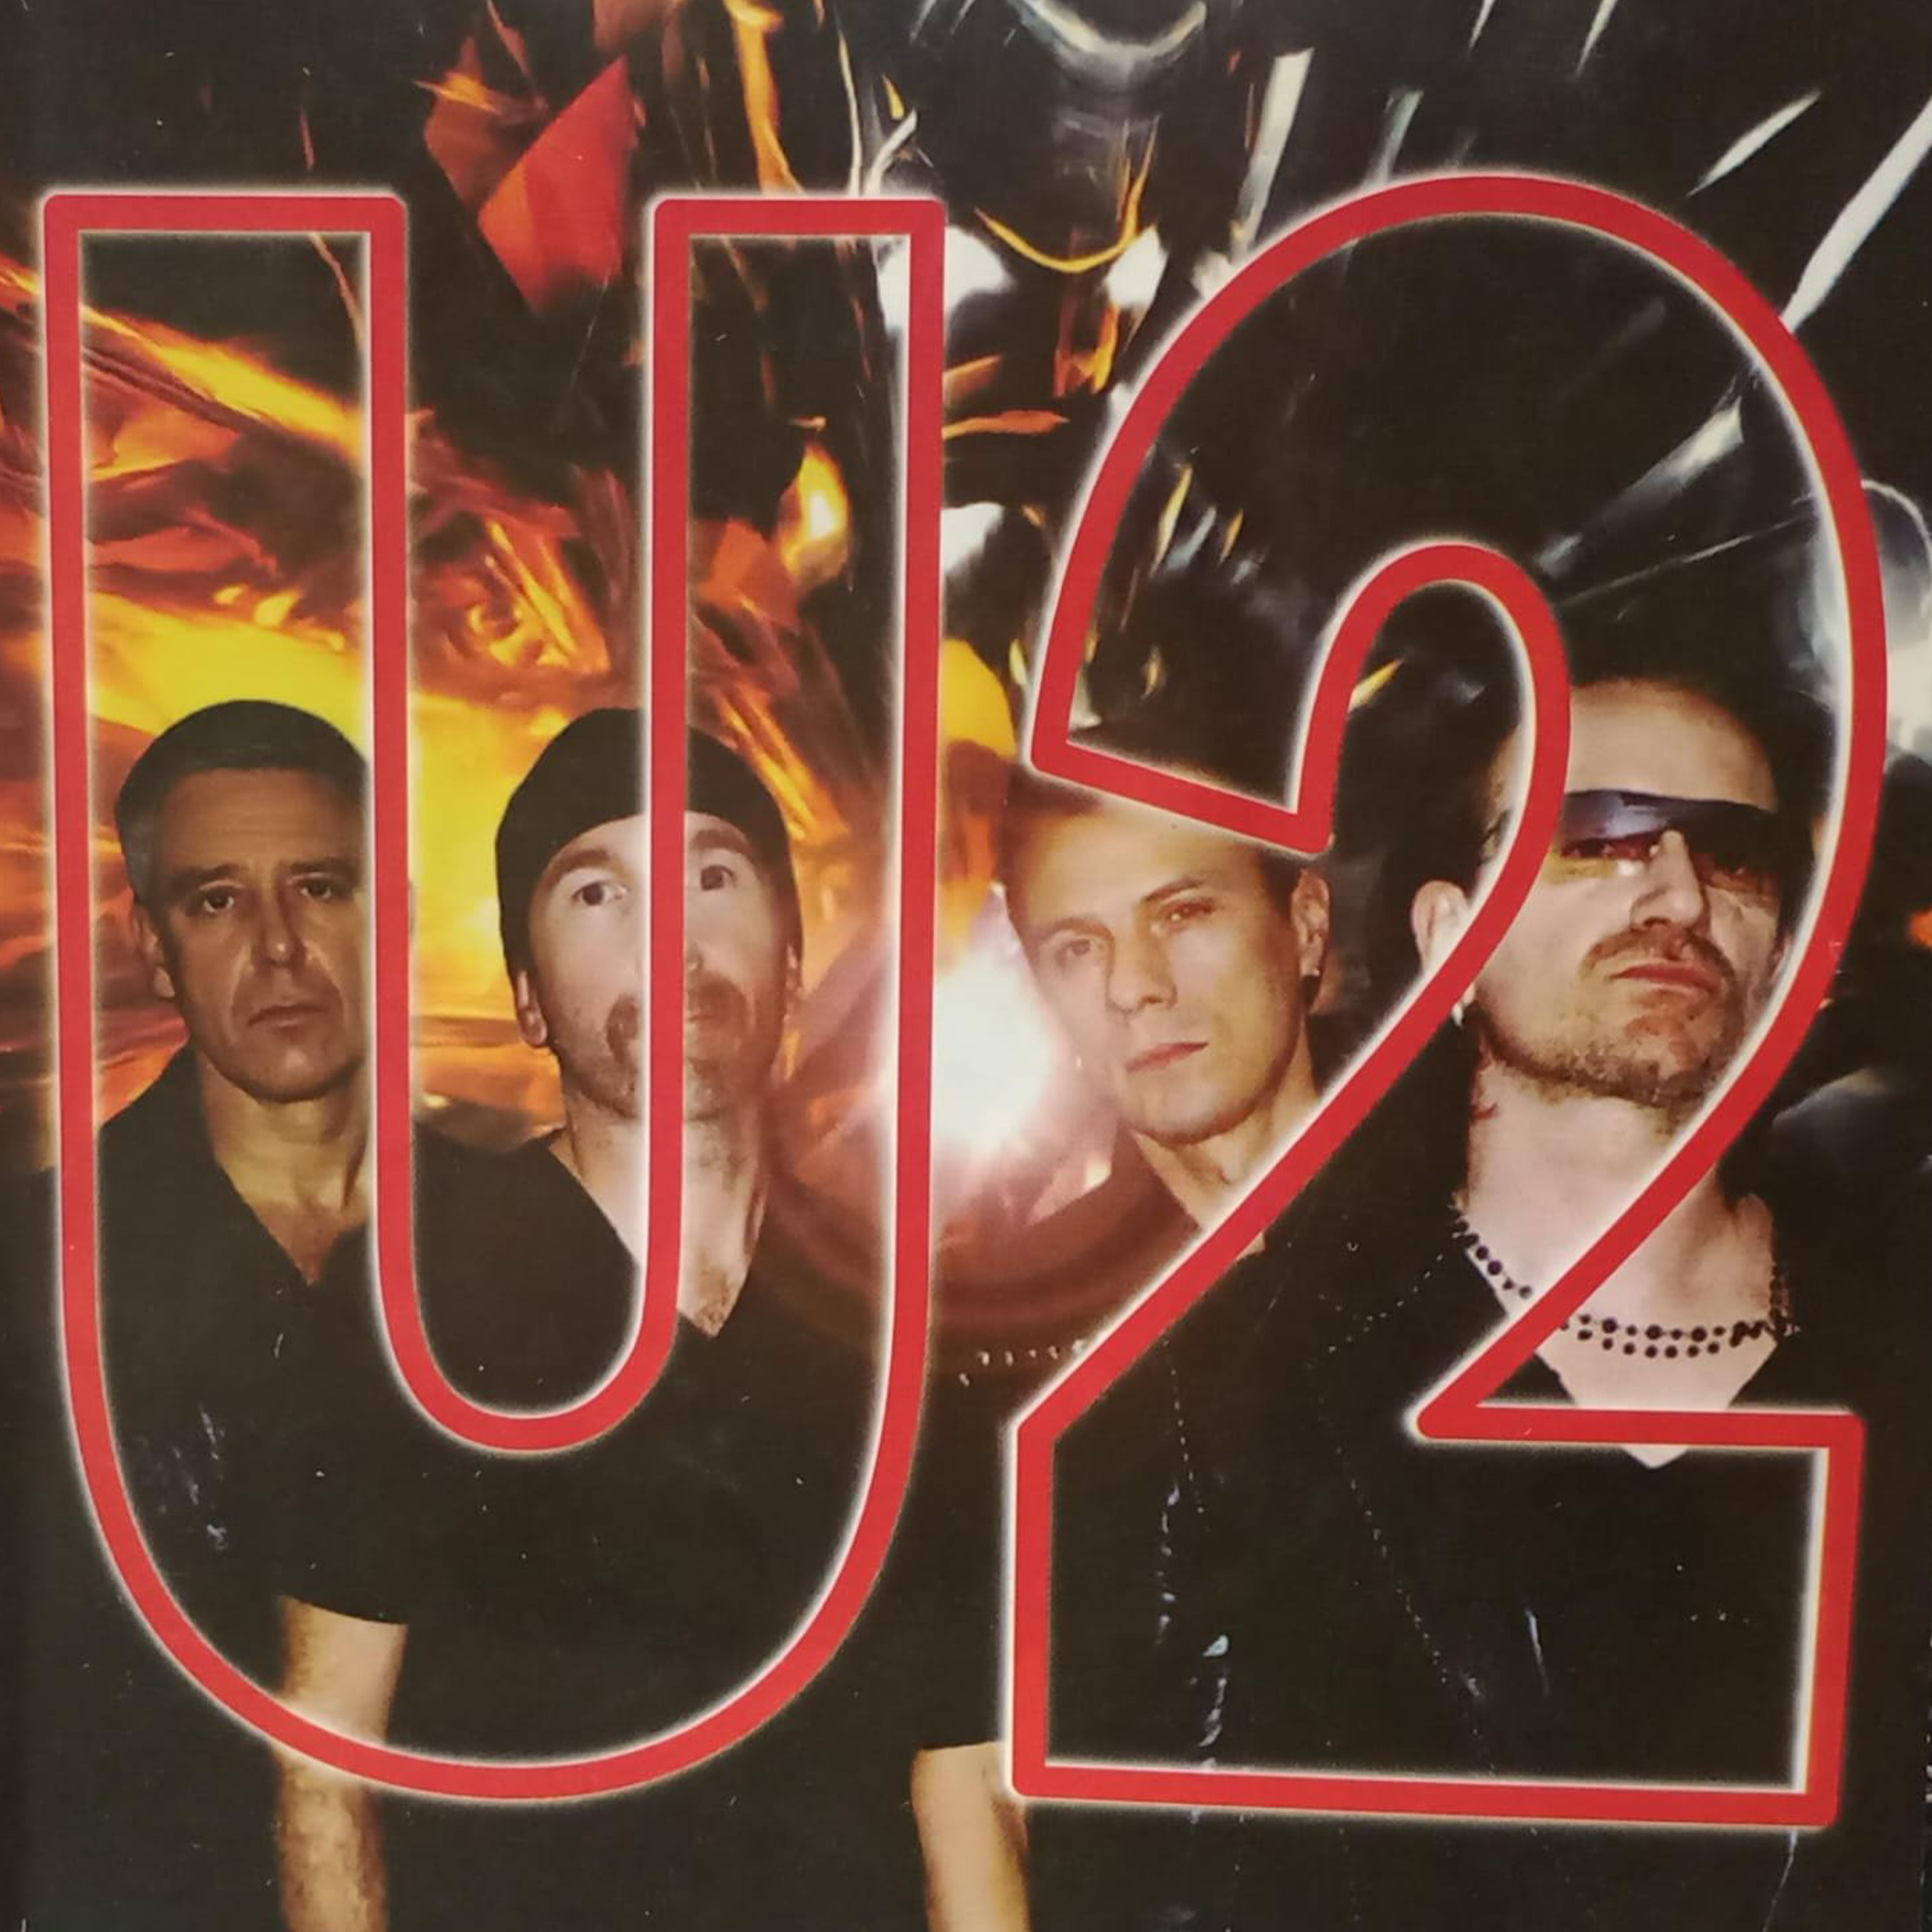 CD - U2 - Best Of